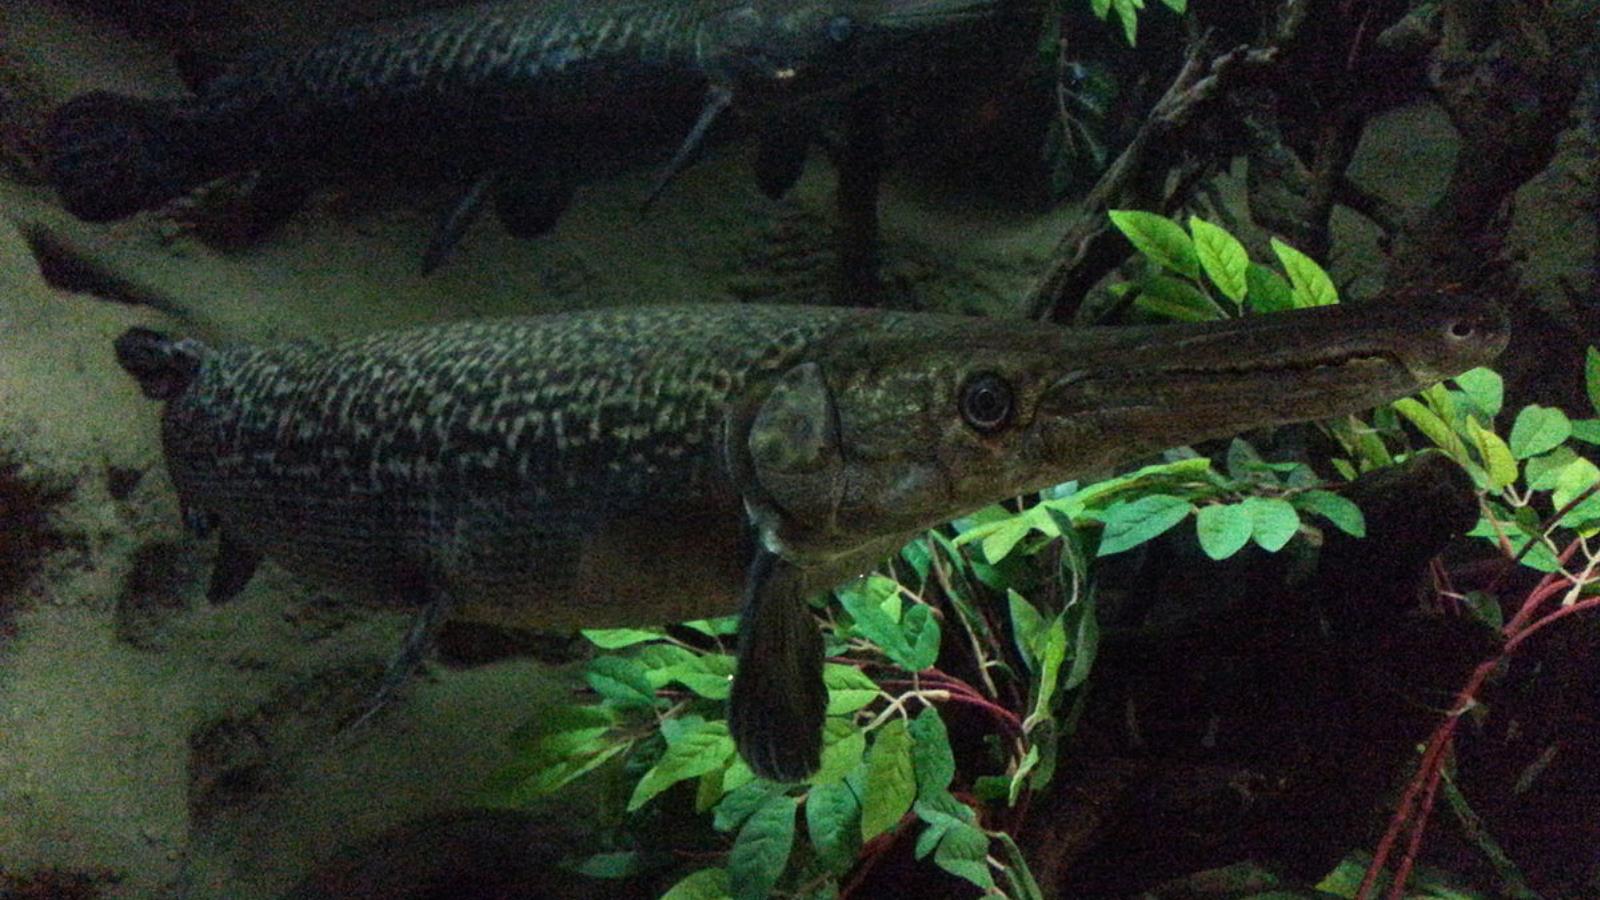 ‪(ويكيميديا)‬ أسماك الغار تتطور ببطء وحافظت على المورثات الجينية للأجداد أكثر من الأسماك الأخرىتتطور 